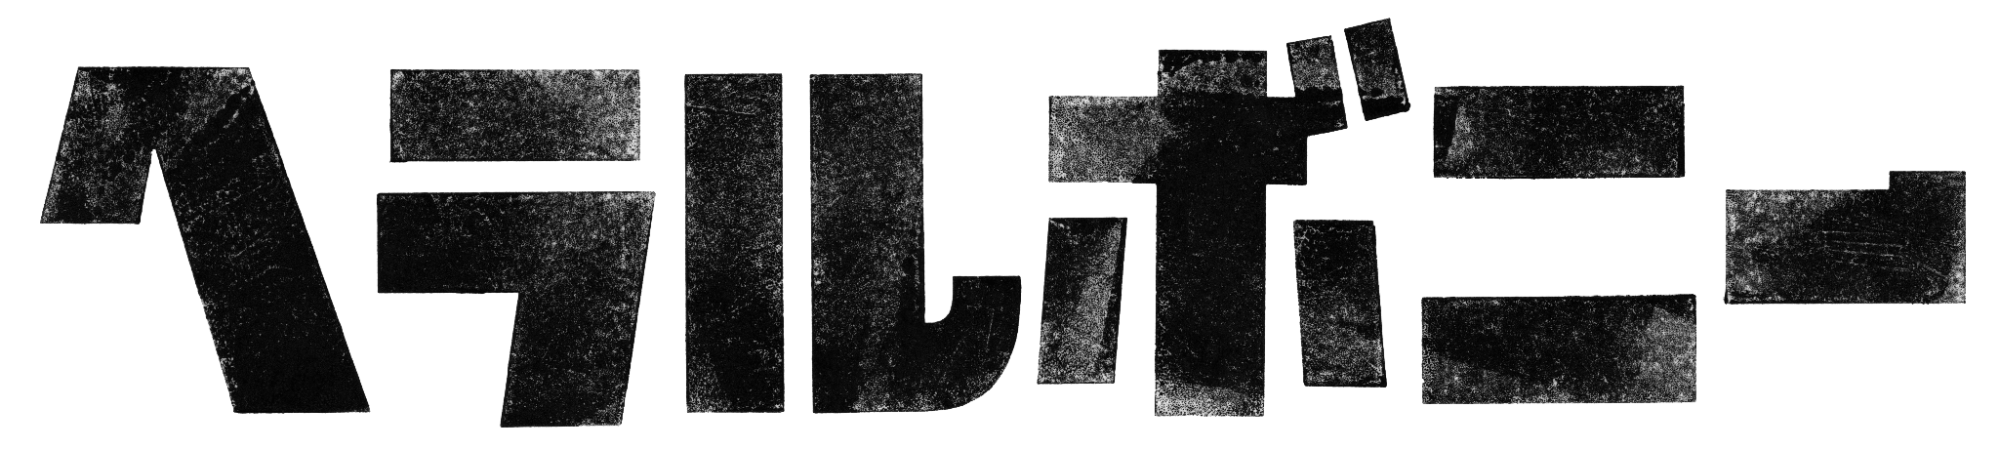 ヘラルボニーロゴ